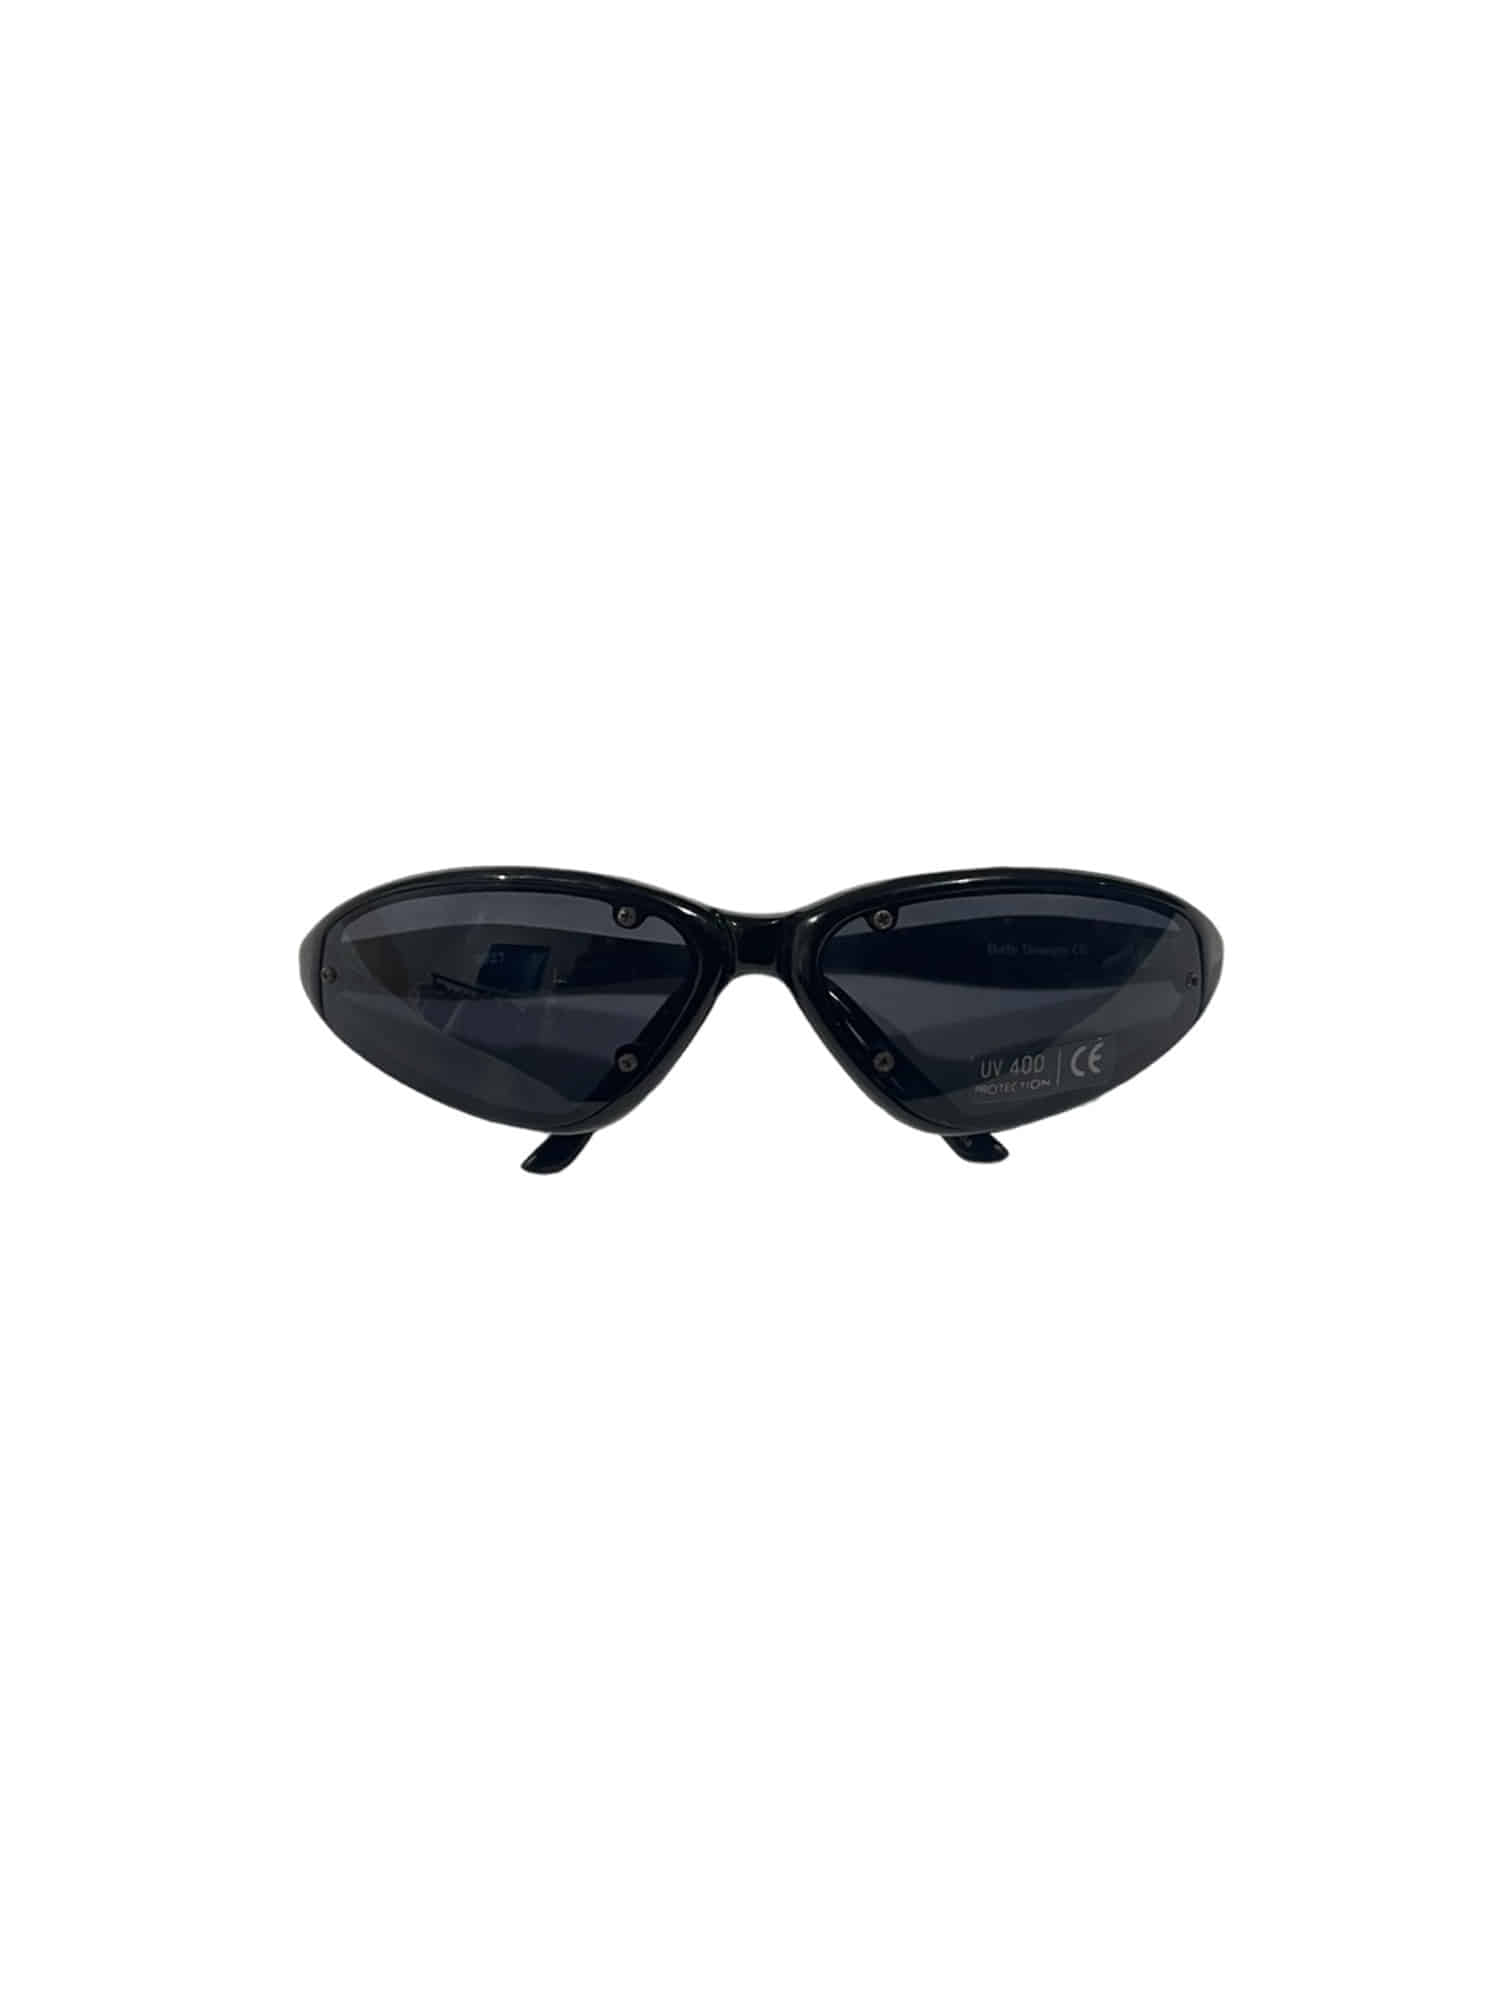 Leisure Frame Vintage Sunglasses JP